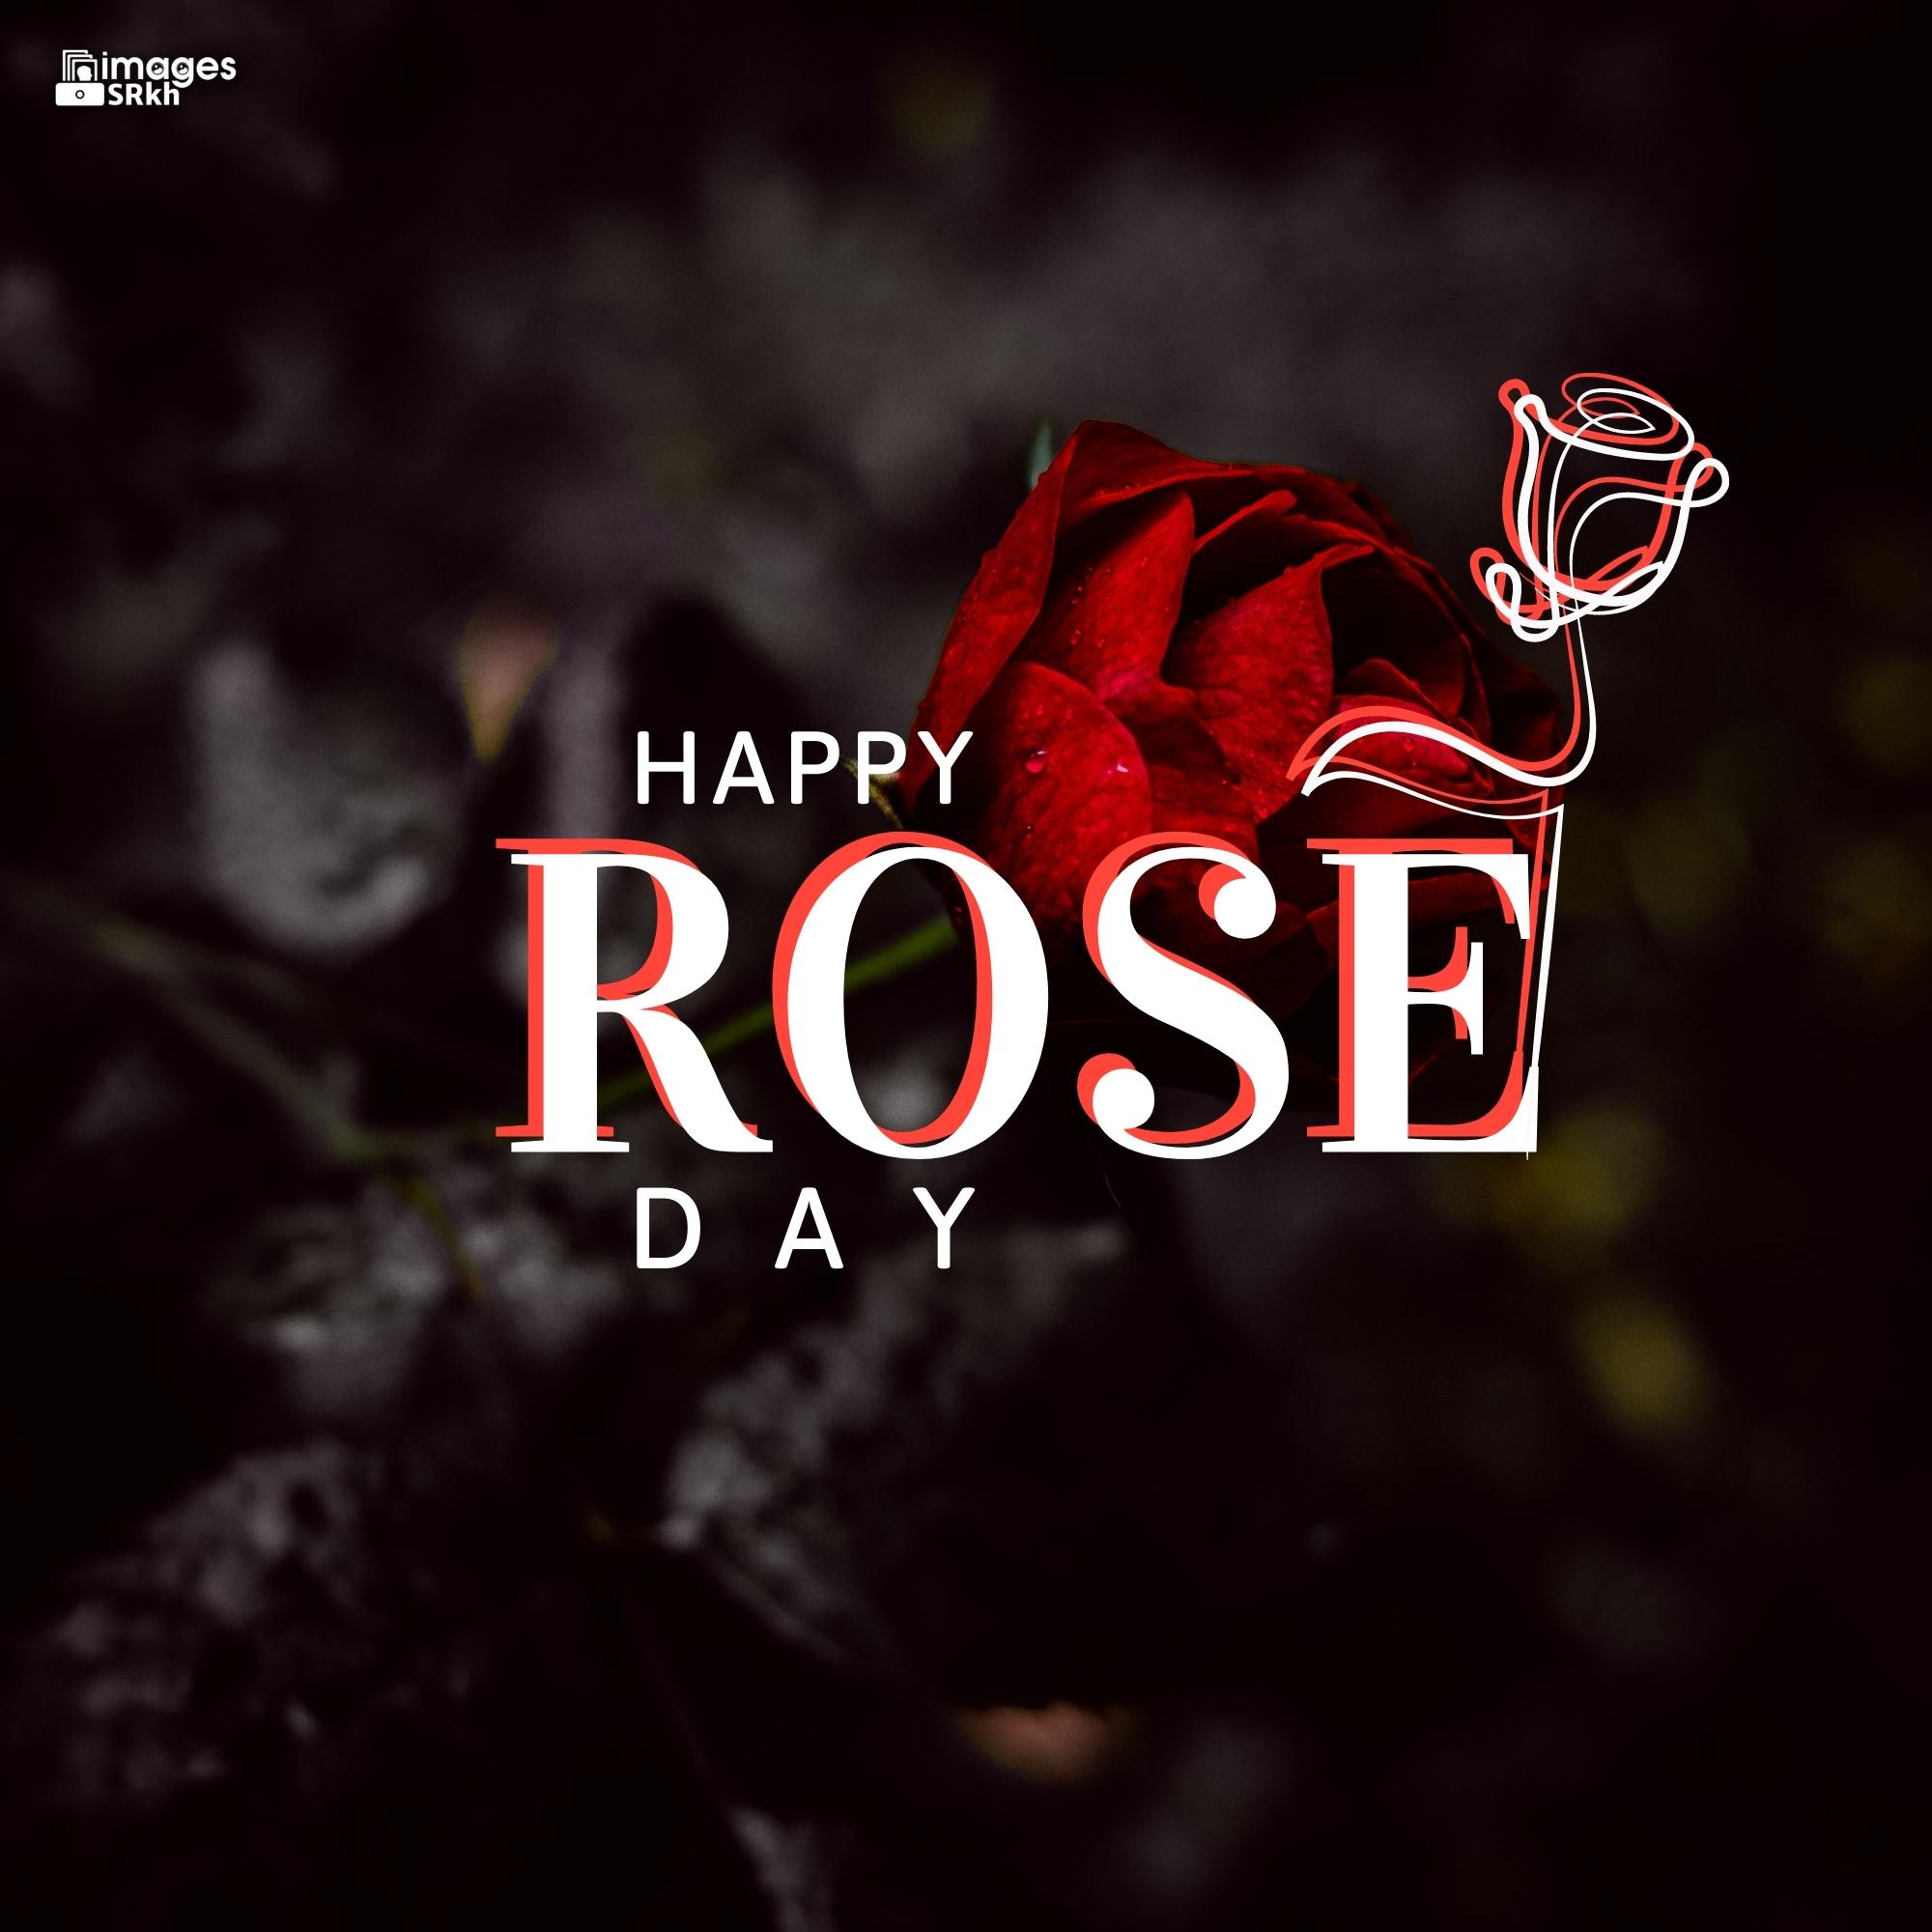 Rose Day Wishing Image Hd Download (19)